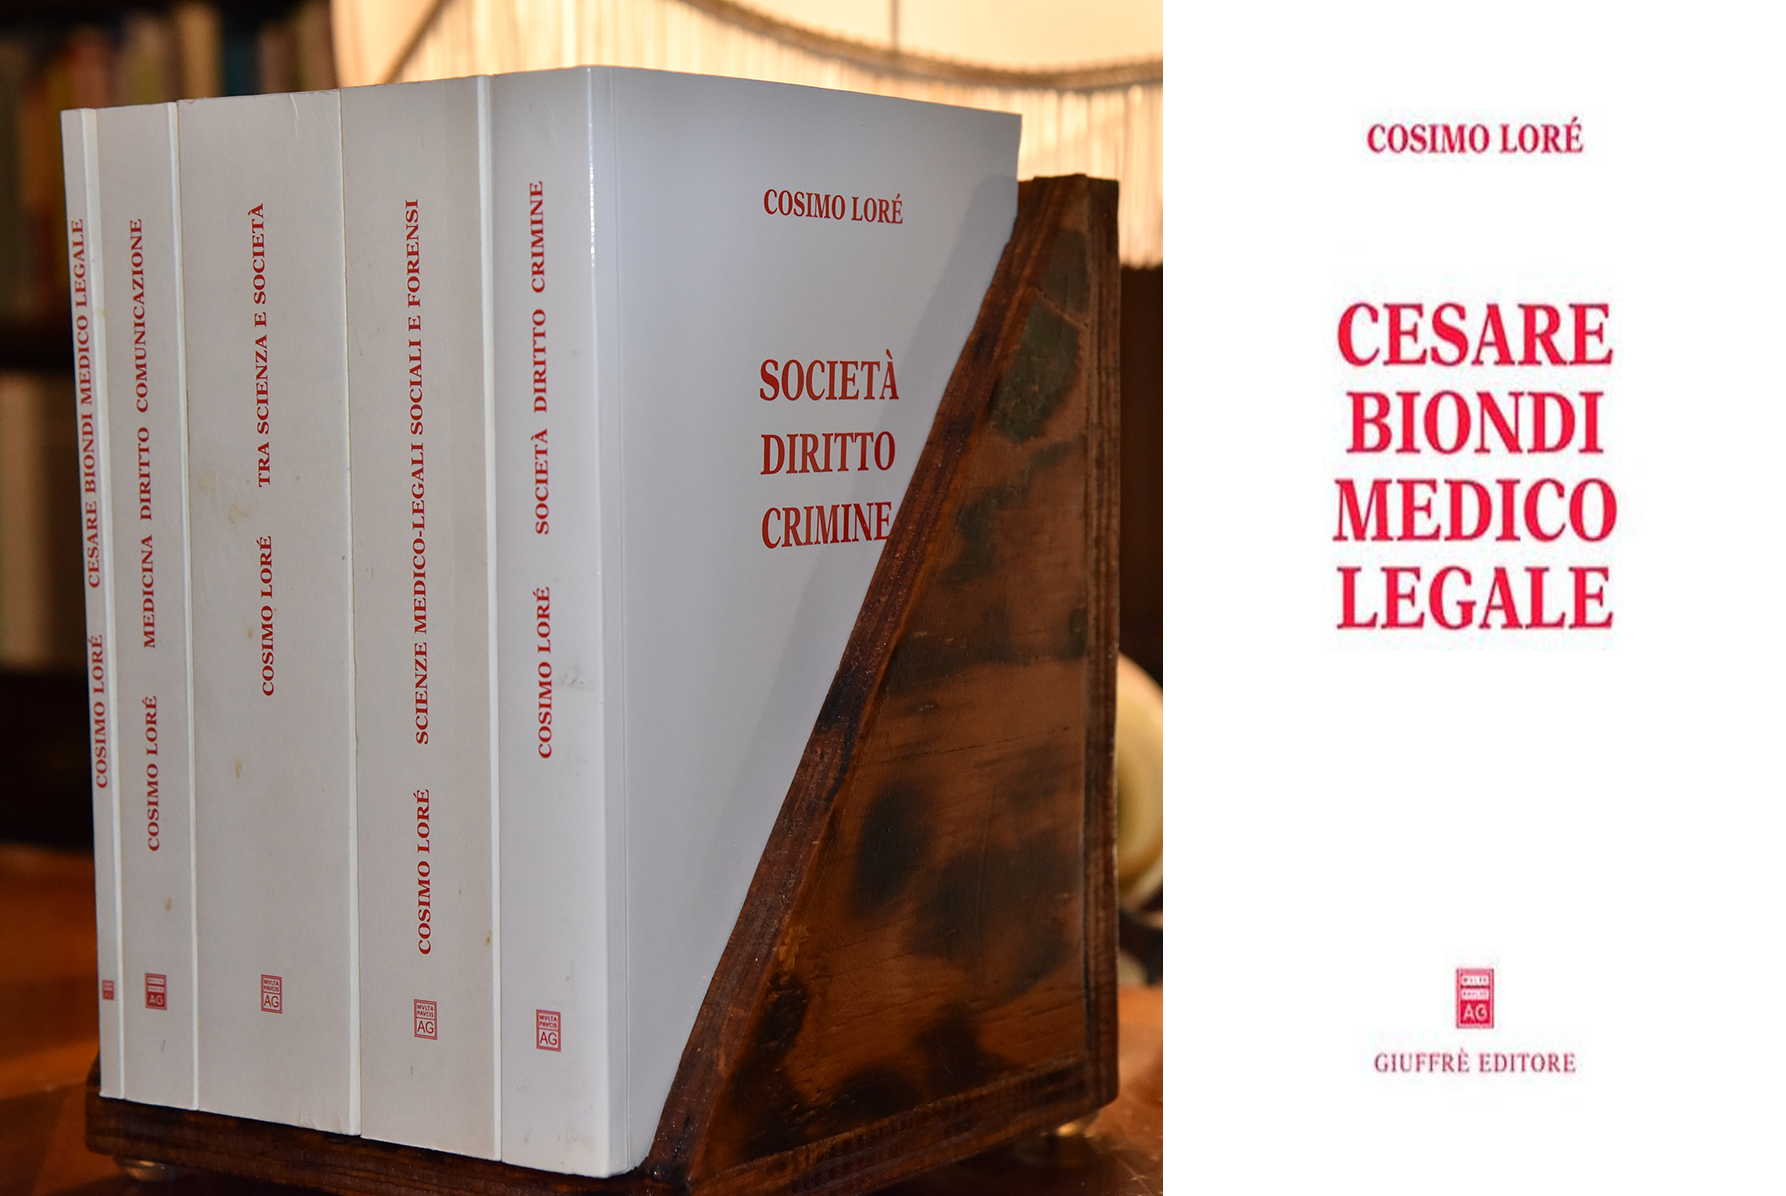  Cesare Biondi medico legale - Cosimo Lorè